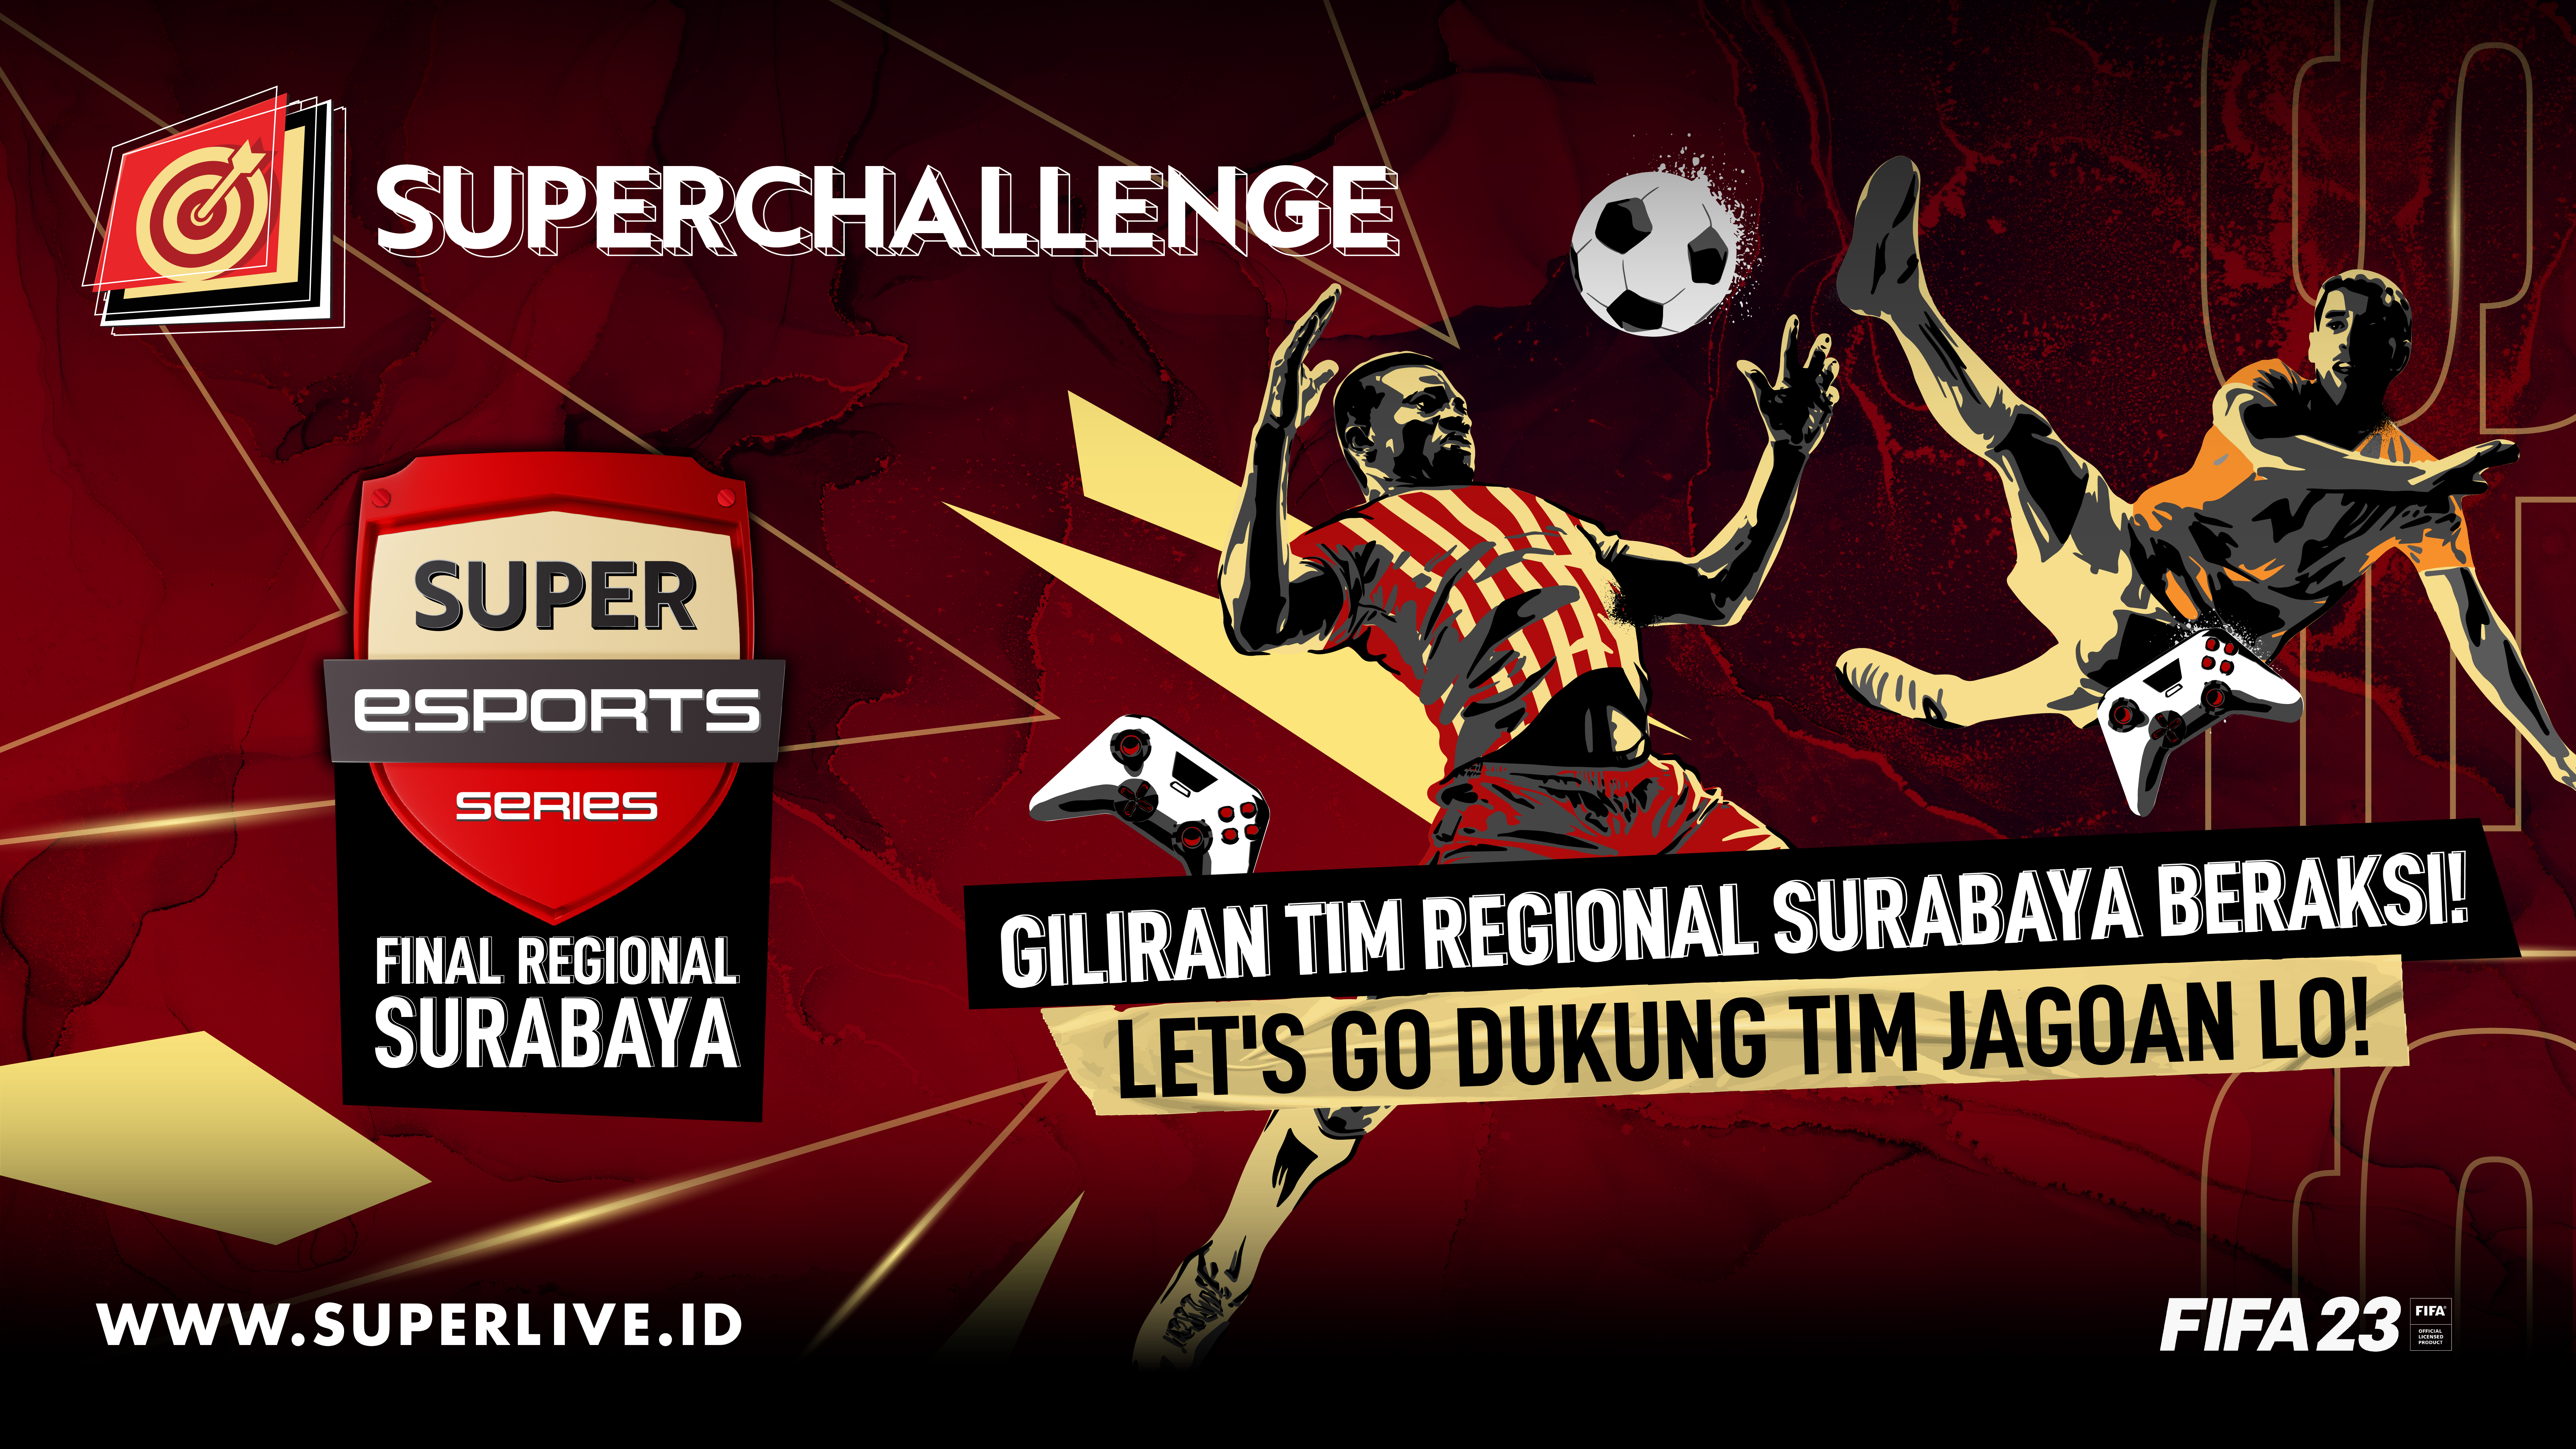 Arek-Arek Suroboyo Jangan Kemana-mana! Super Esports Series FIFA 2023 Final Regional Surabaya Dah Mulai!